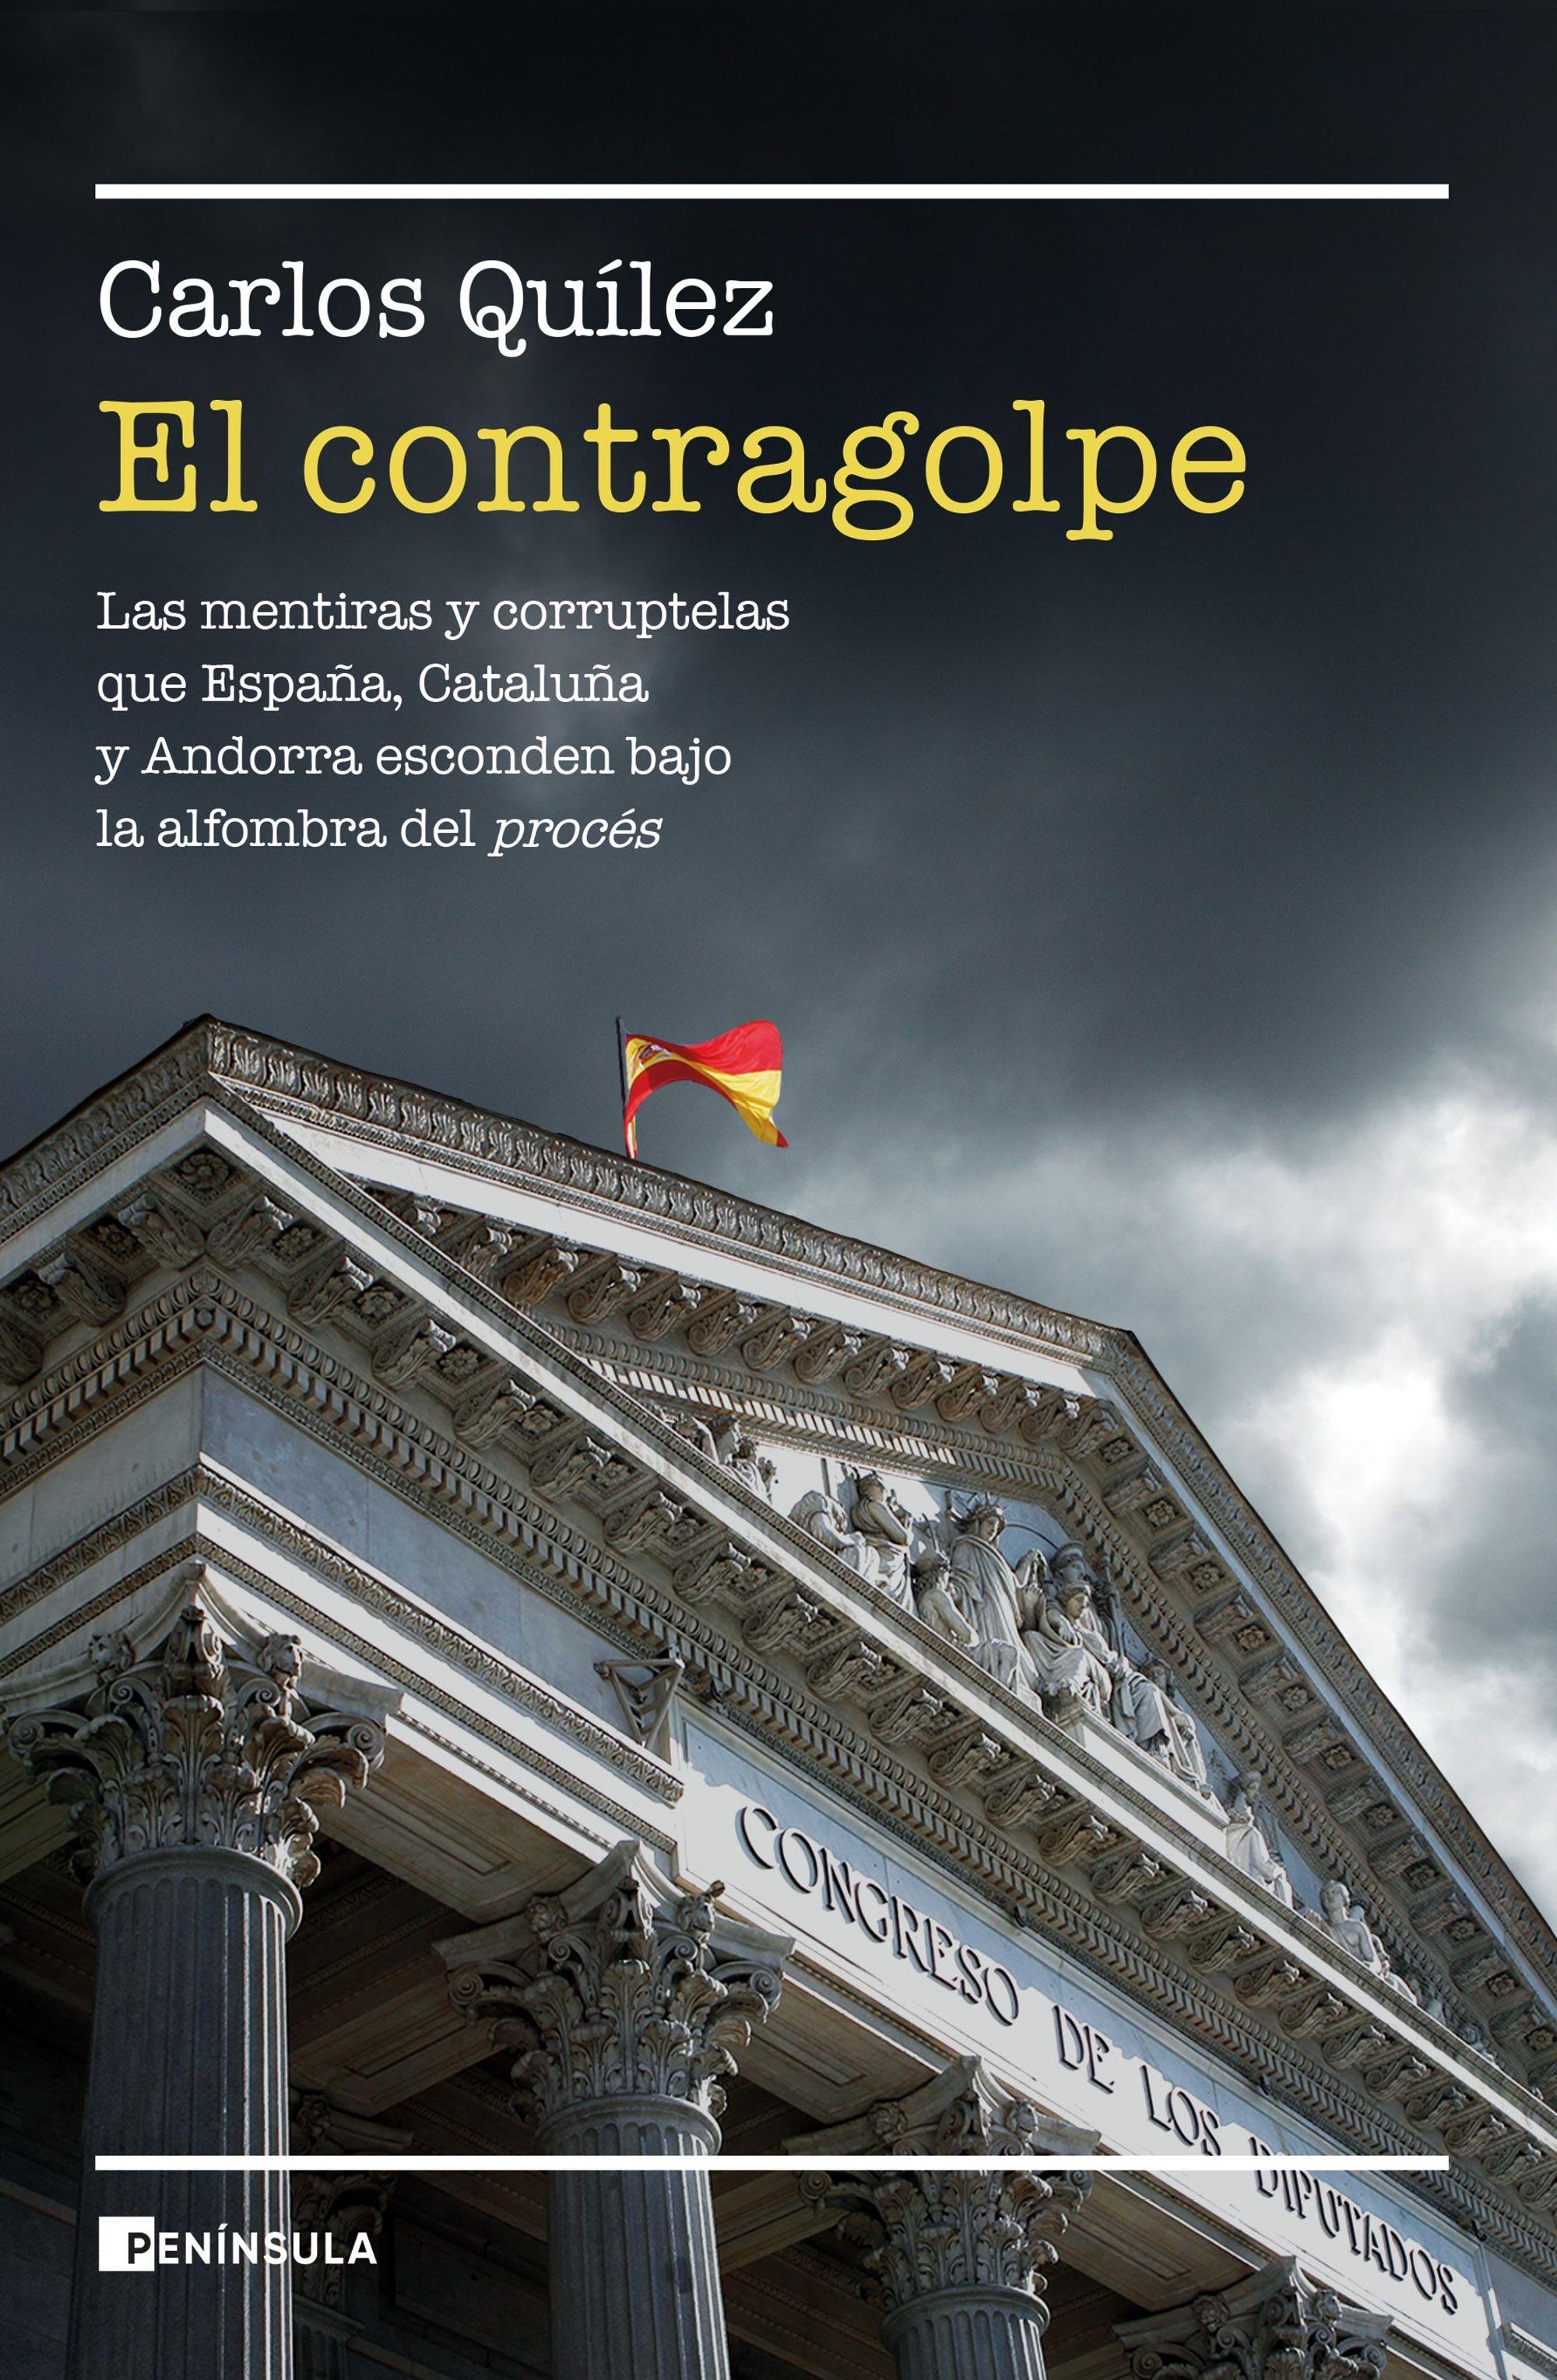 El Contragolpe "Las Mentiras y Corruptelas que Cataluña, España y Andorra Esconden Bajo"